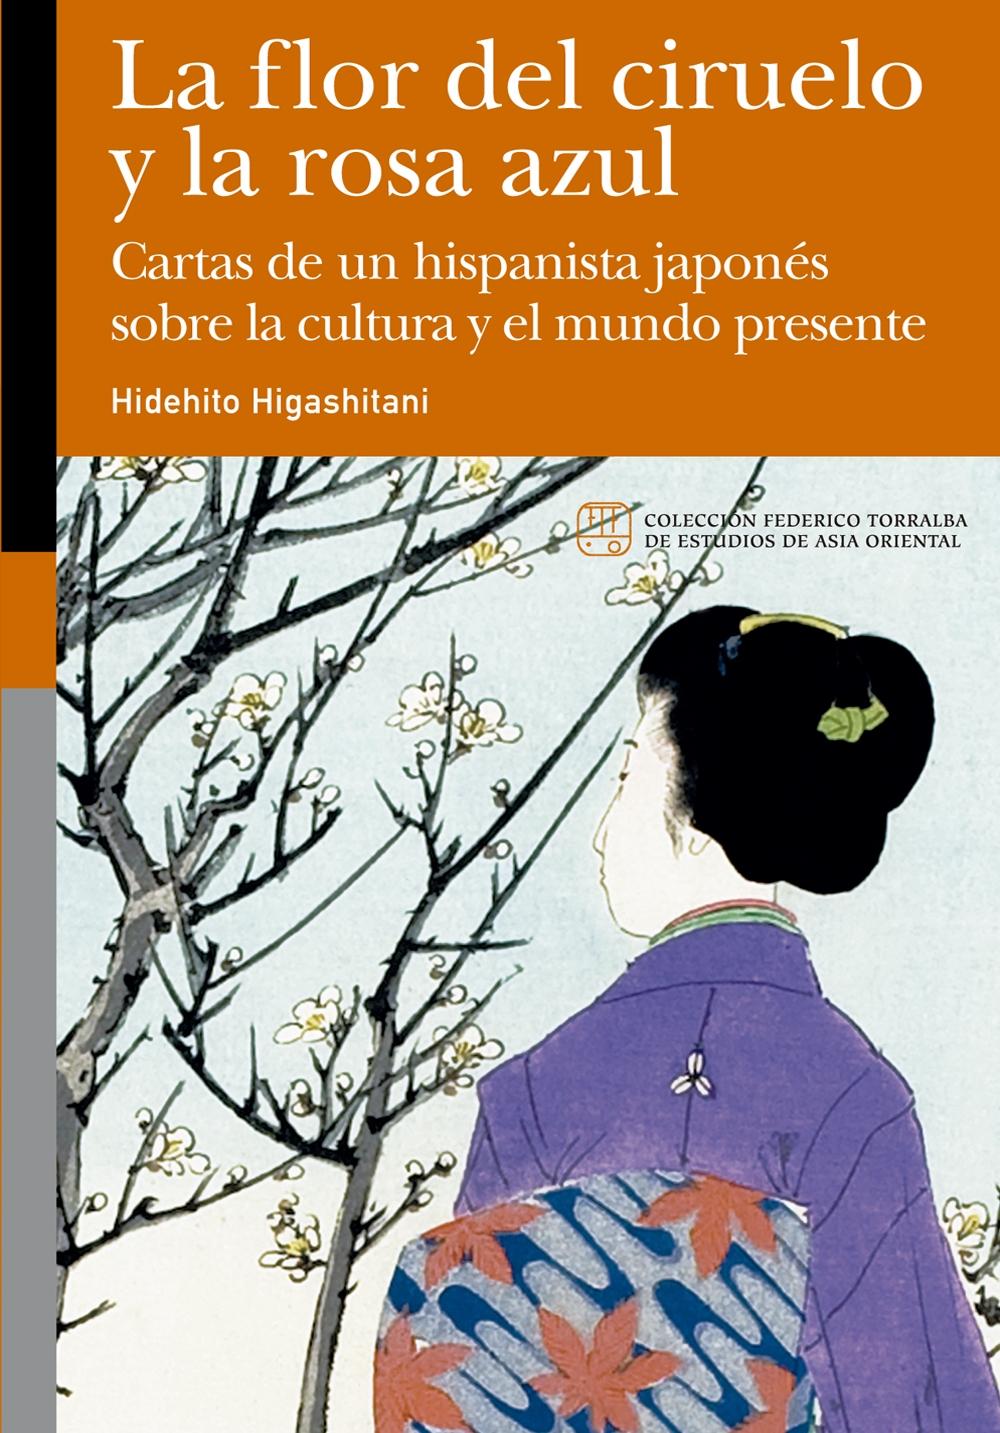 Flor del ciruelo y la rosa azul, La "Cartas de un hispanista japonés sobre la cultura y el mundo presente"